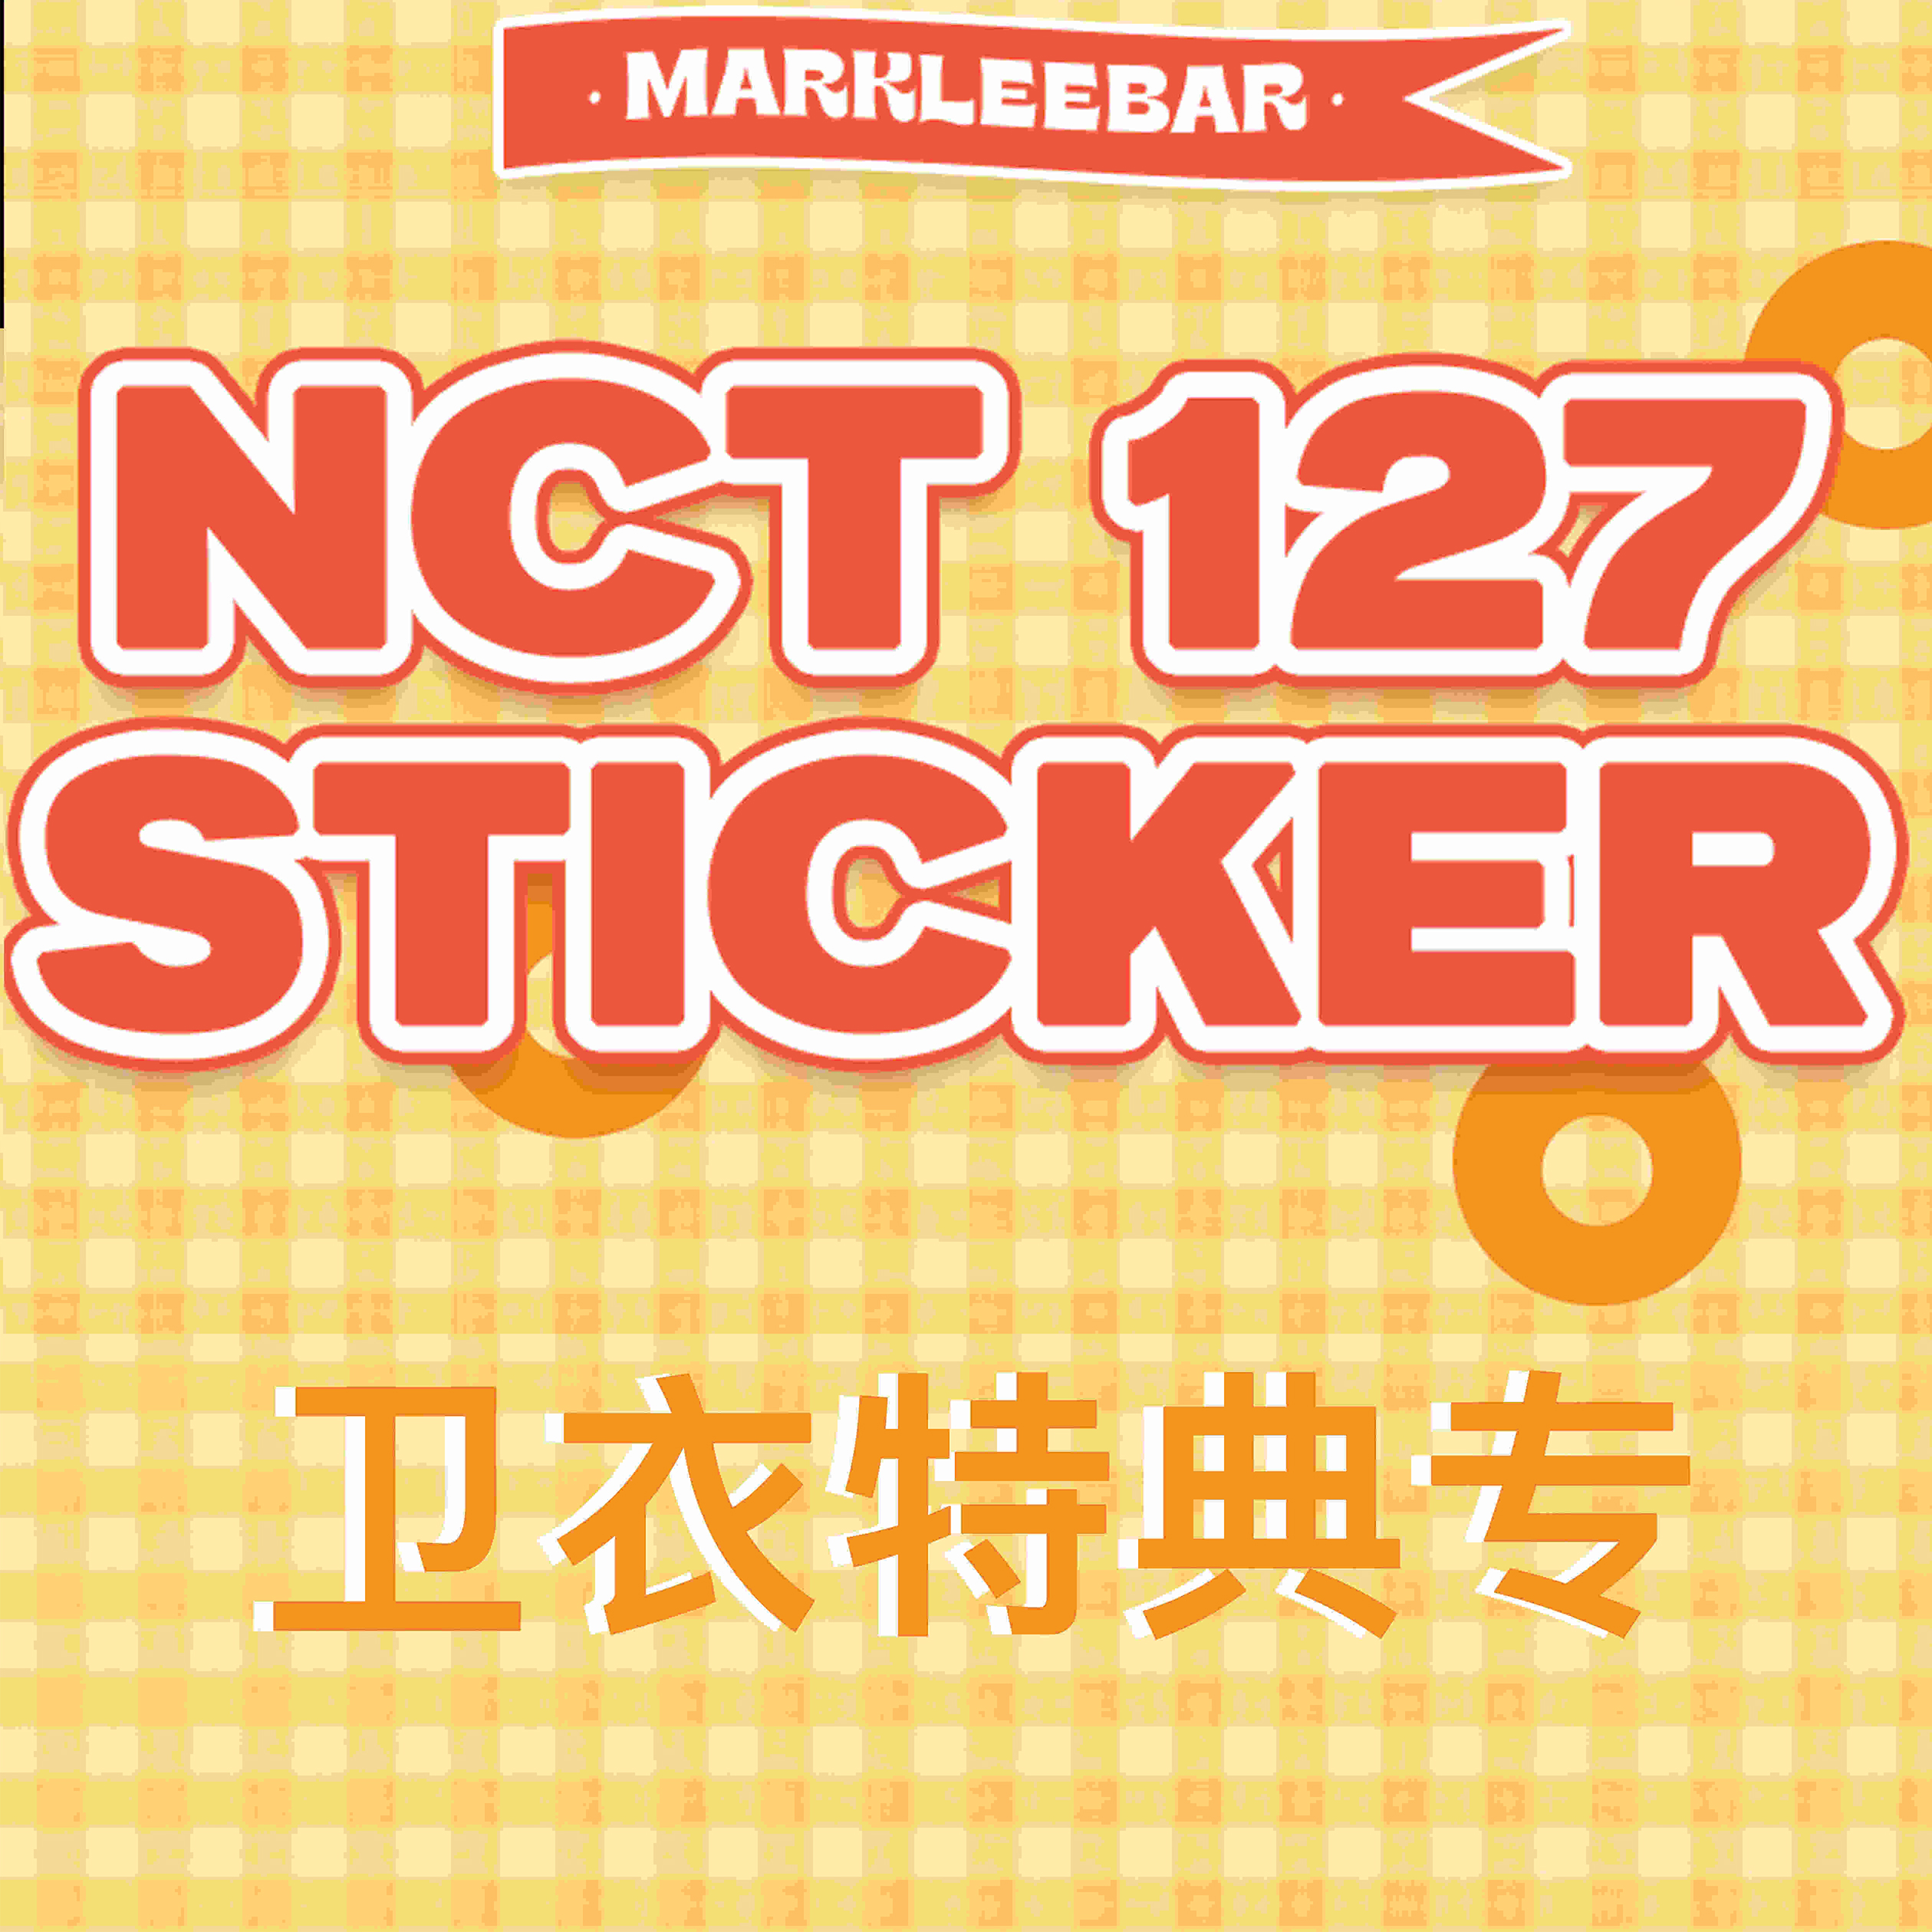 [全款 卫衣专] NCT 127 - 正规3辑 [Sticker] (Jewel Case Ver.) (Random Ver.)_李马克吧_MarkLeeBar